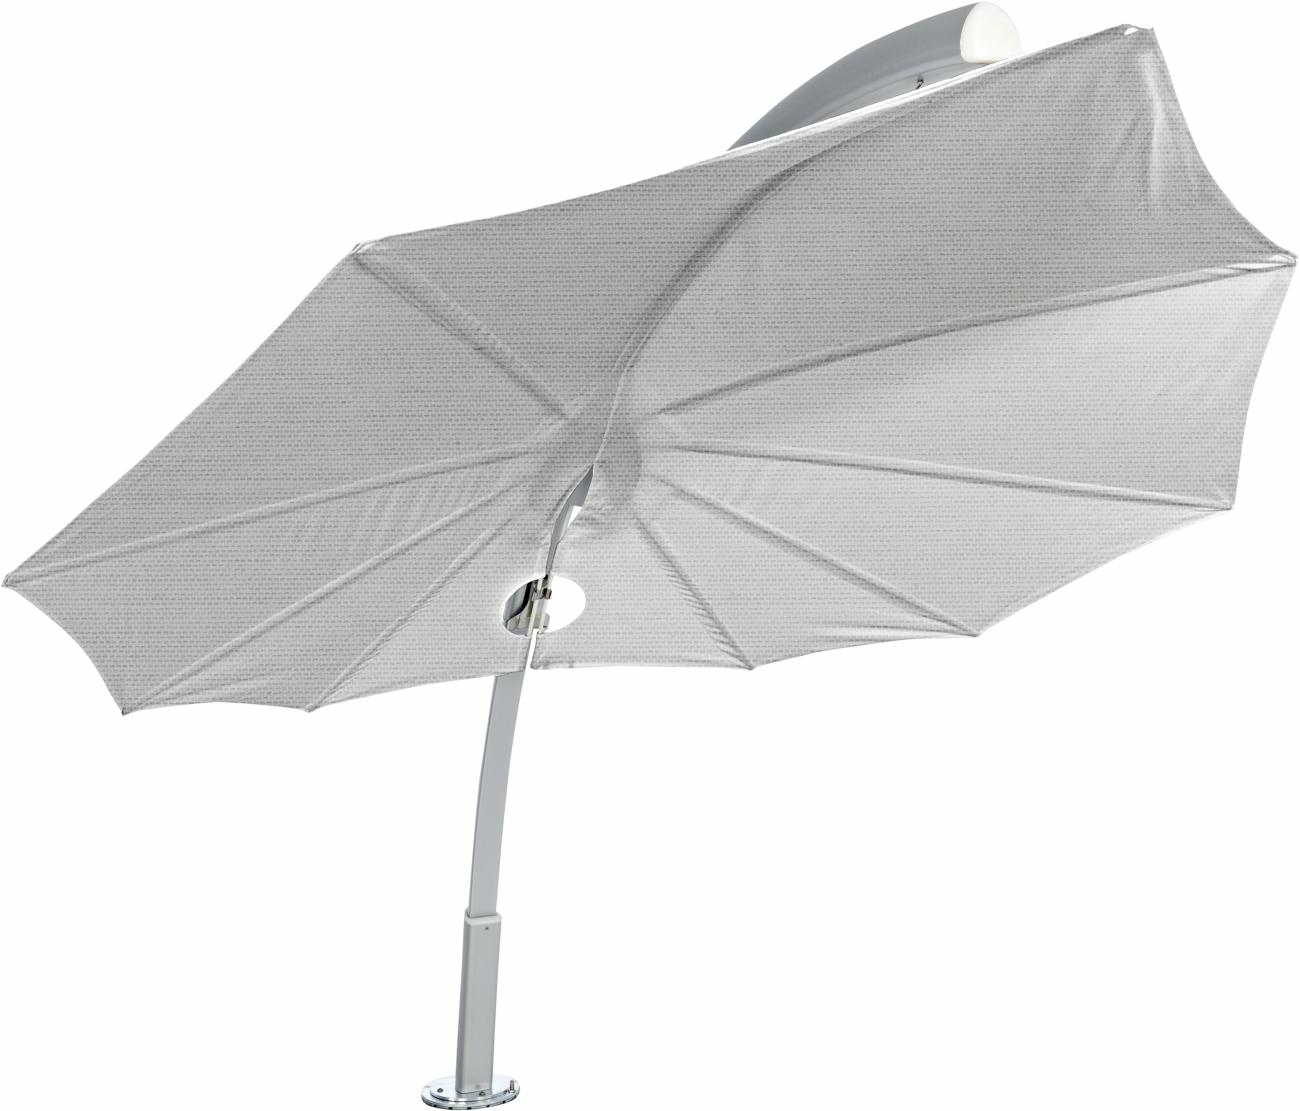 Icarus parasol design